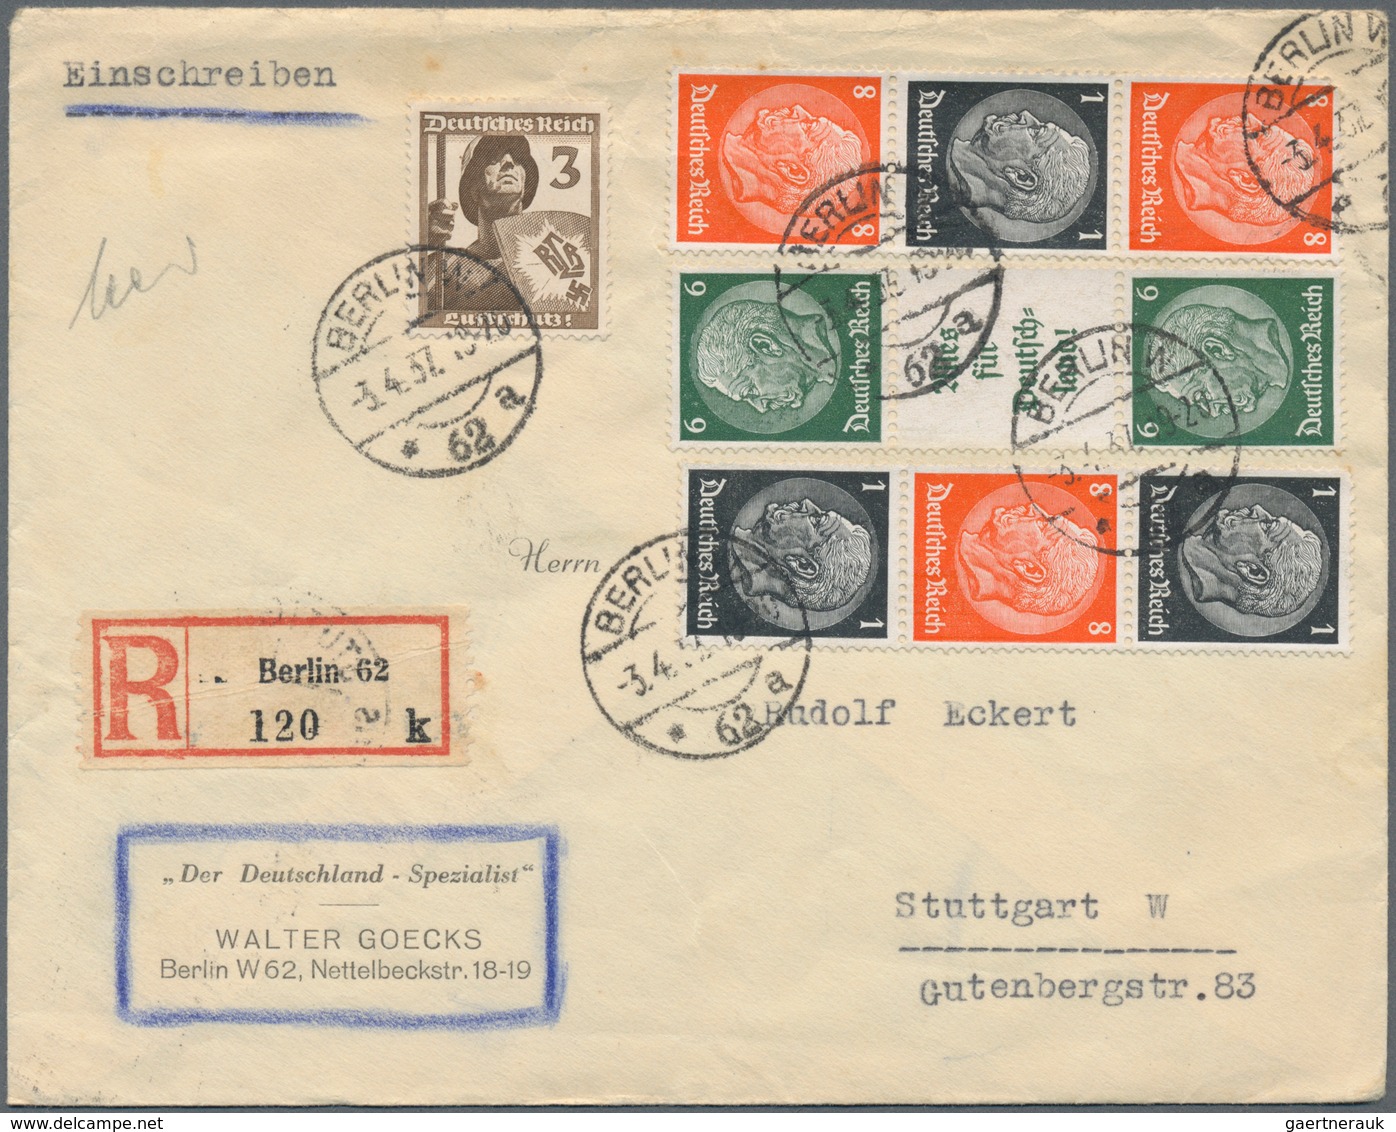 Deutschland: 1860-1960, Partie mit zumeist deutschen Briefen, Belegen, Ganzsachen und Ansichtskarten